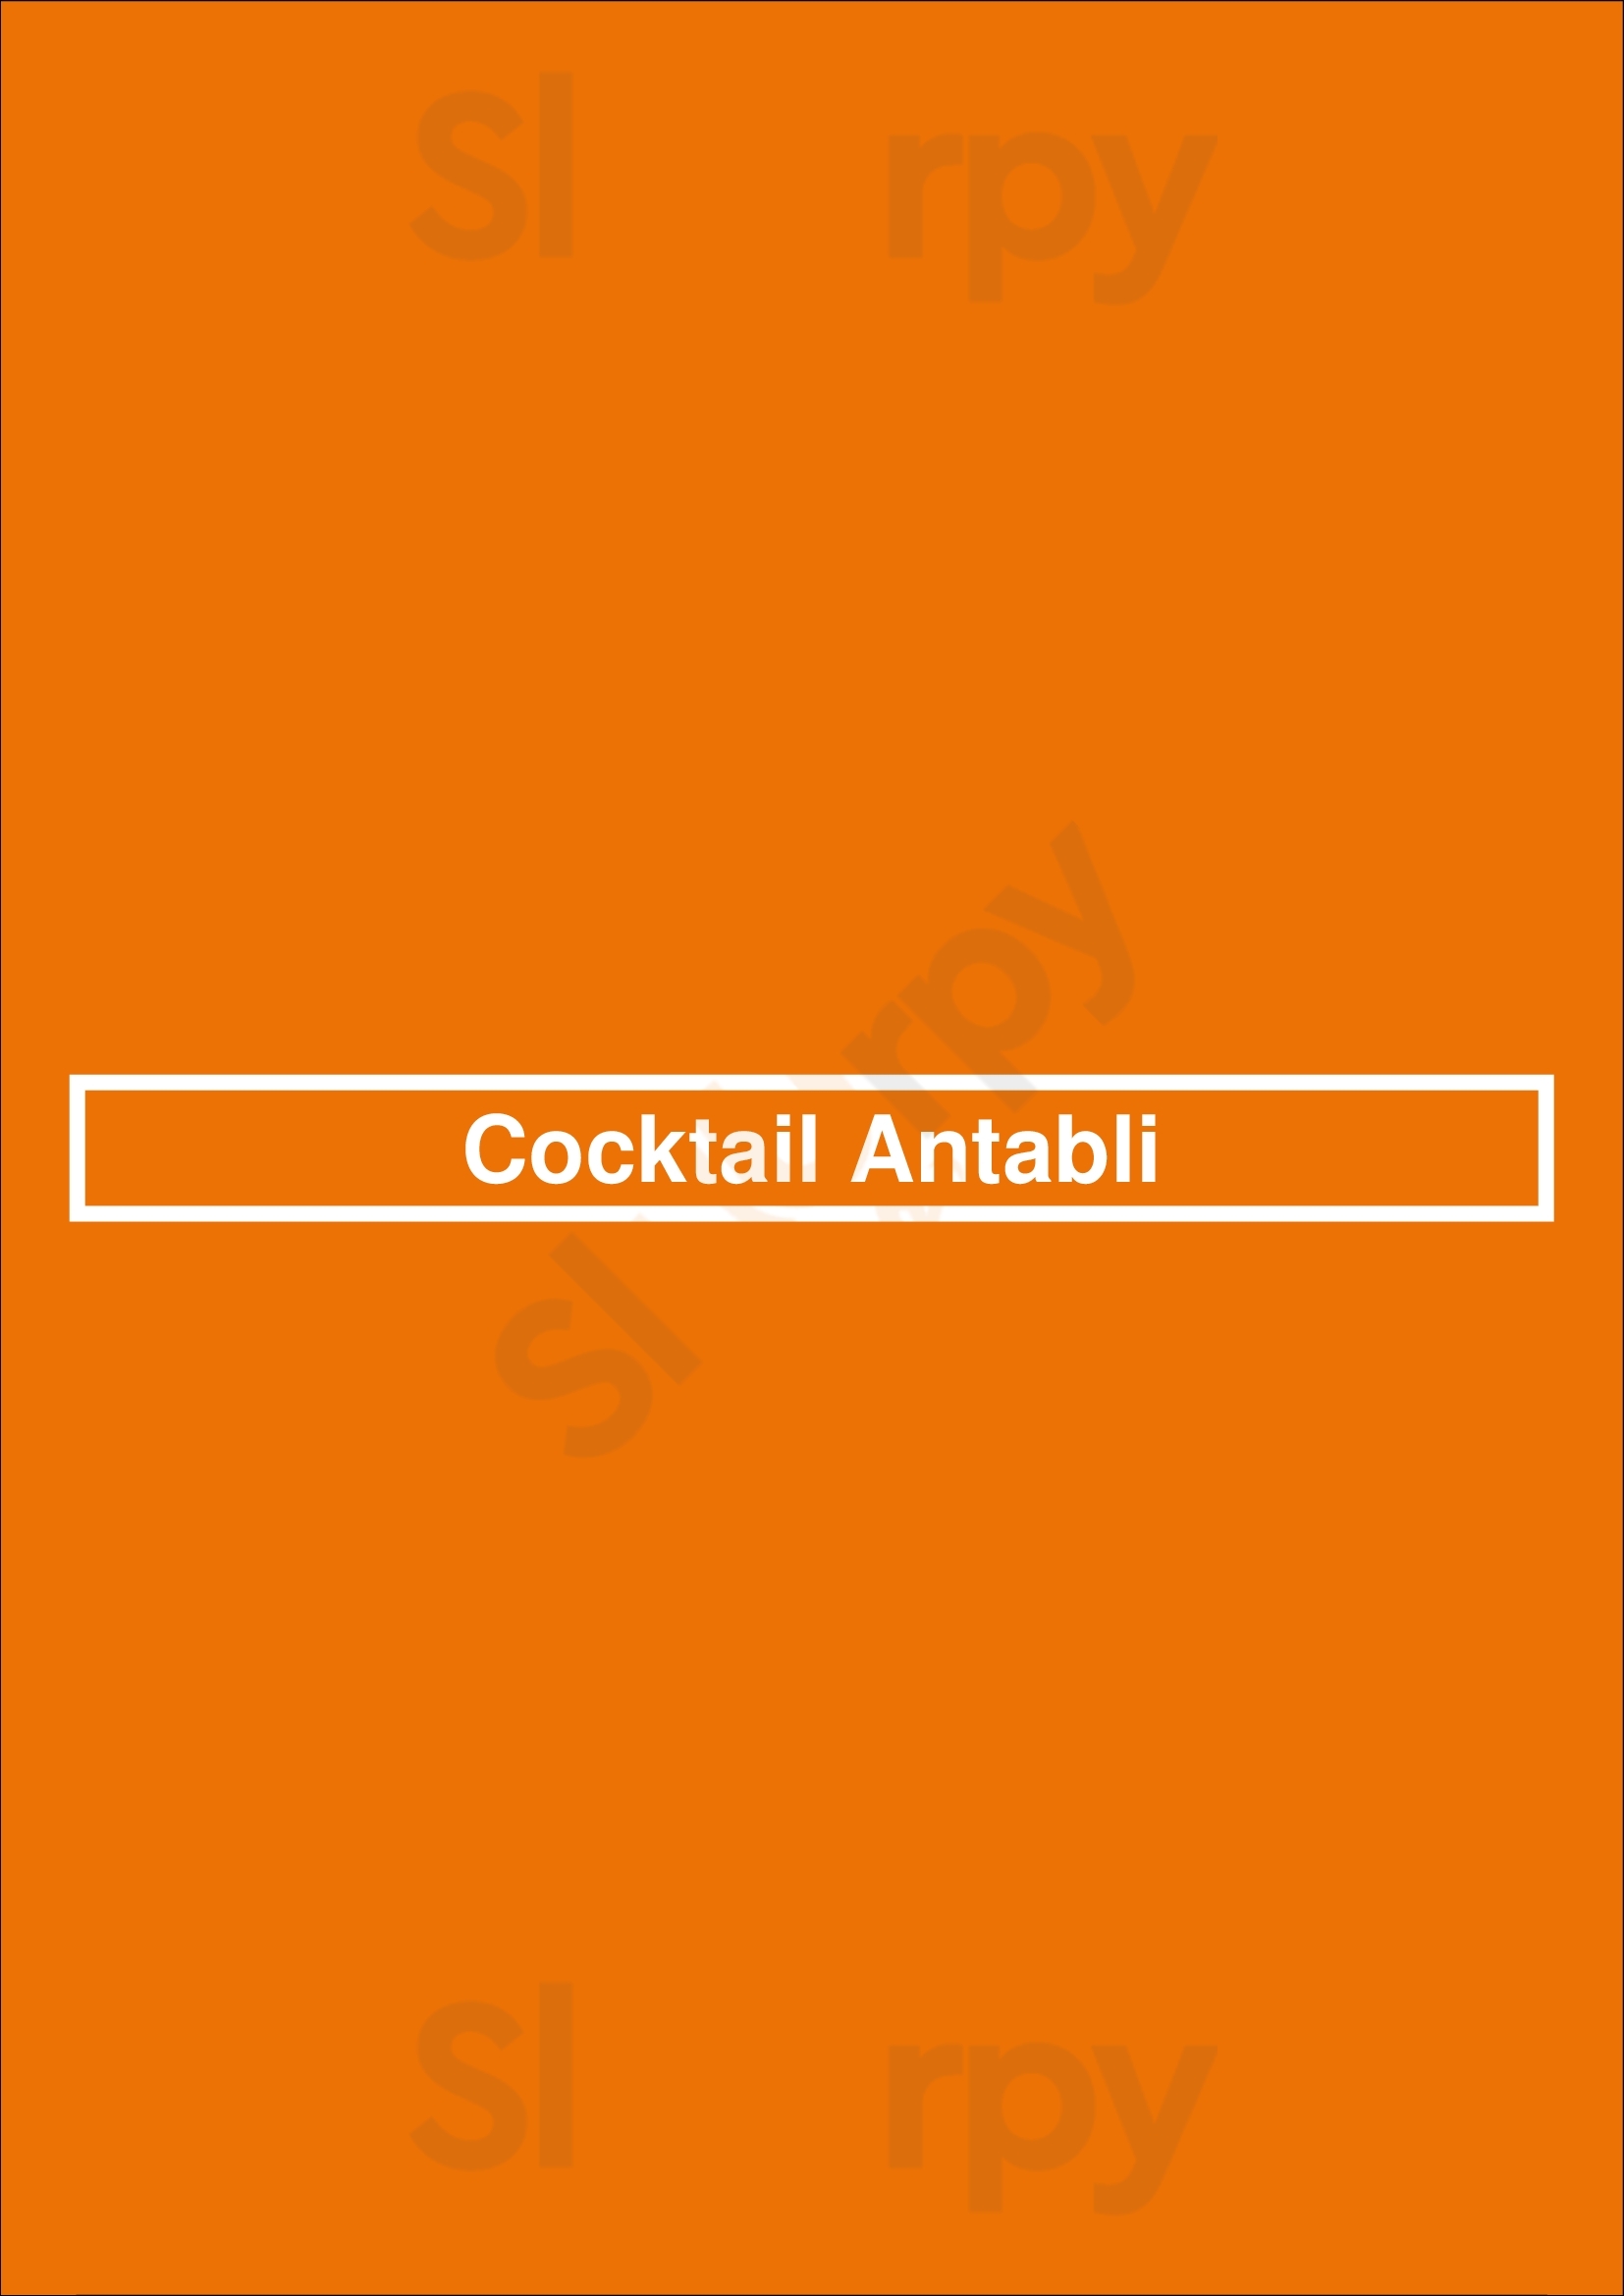 Cocktail Antabli Montreal Menu - 1